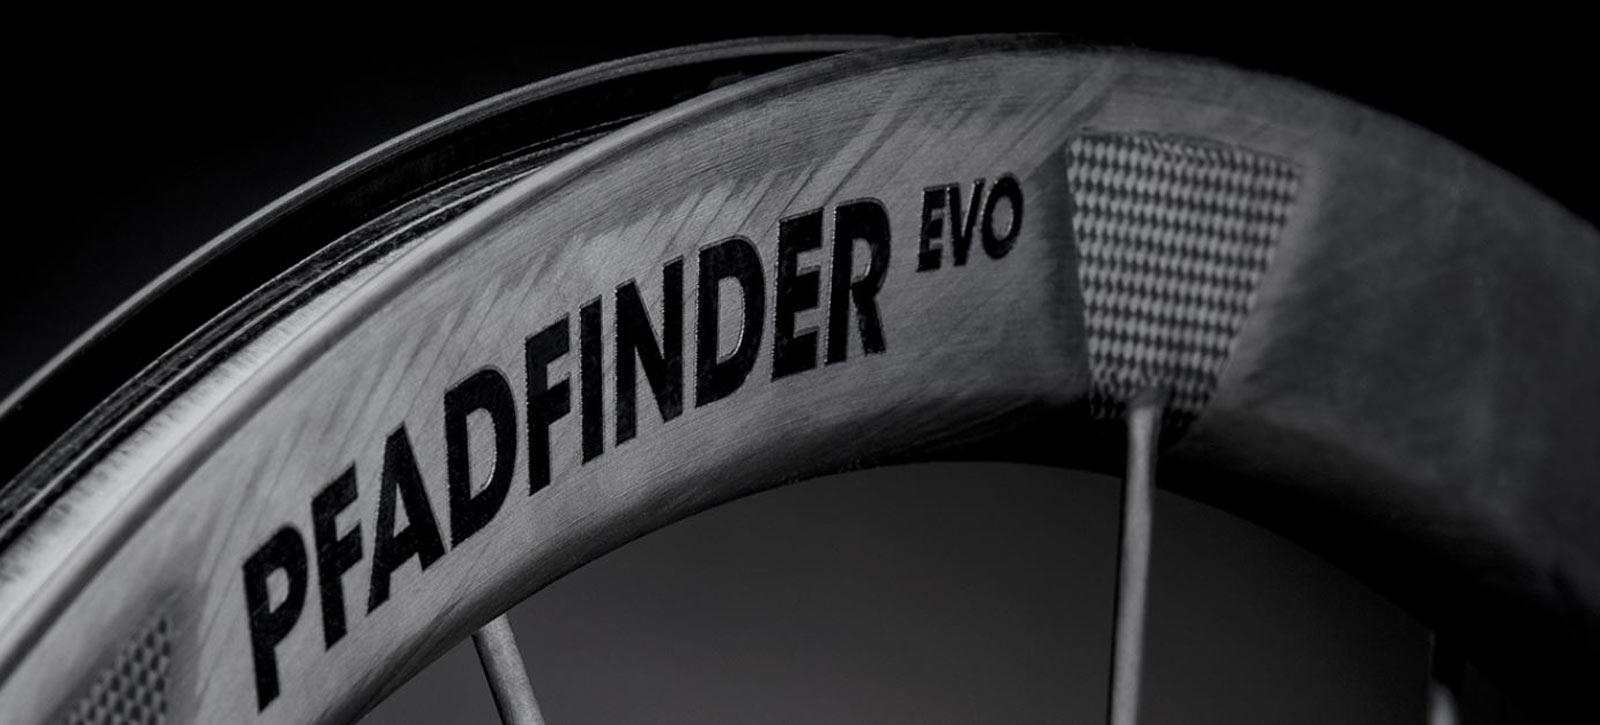 lightweight pfadfinder evo carbon rim gravel riding 40mm tires cfrp